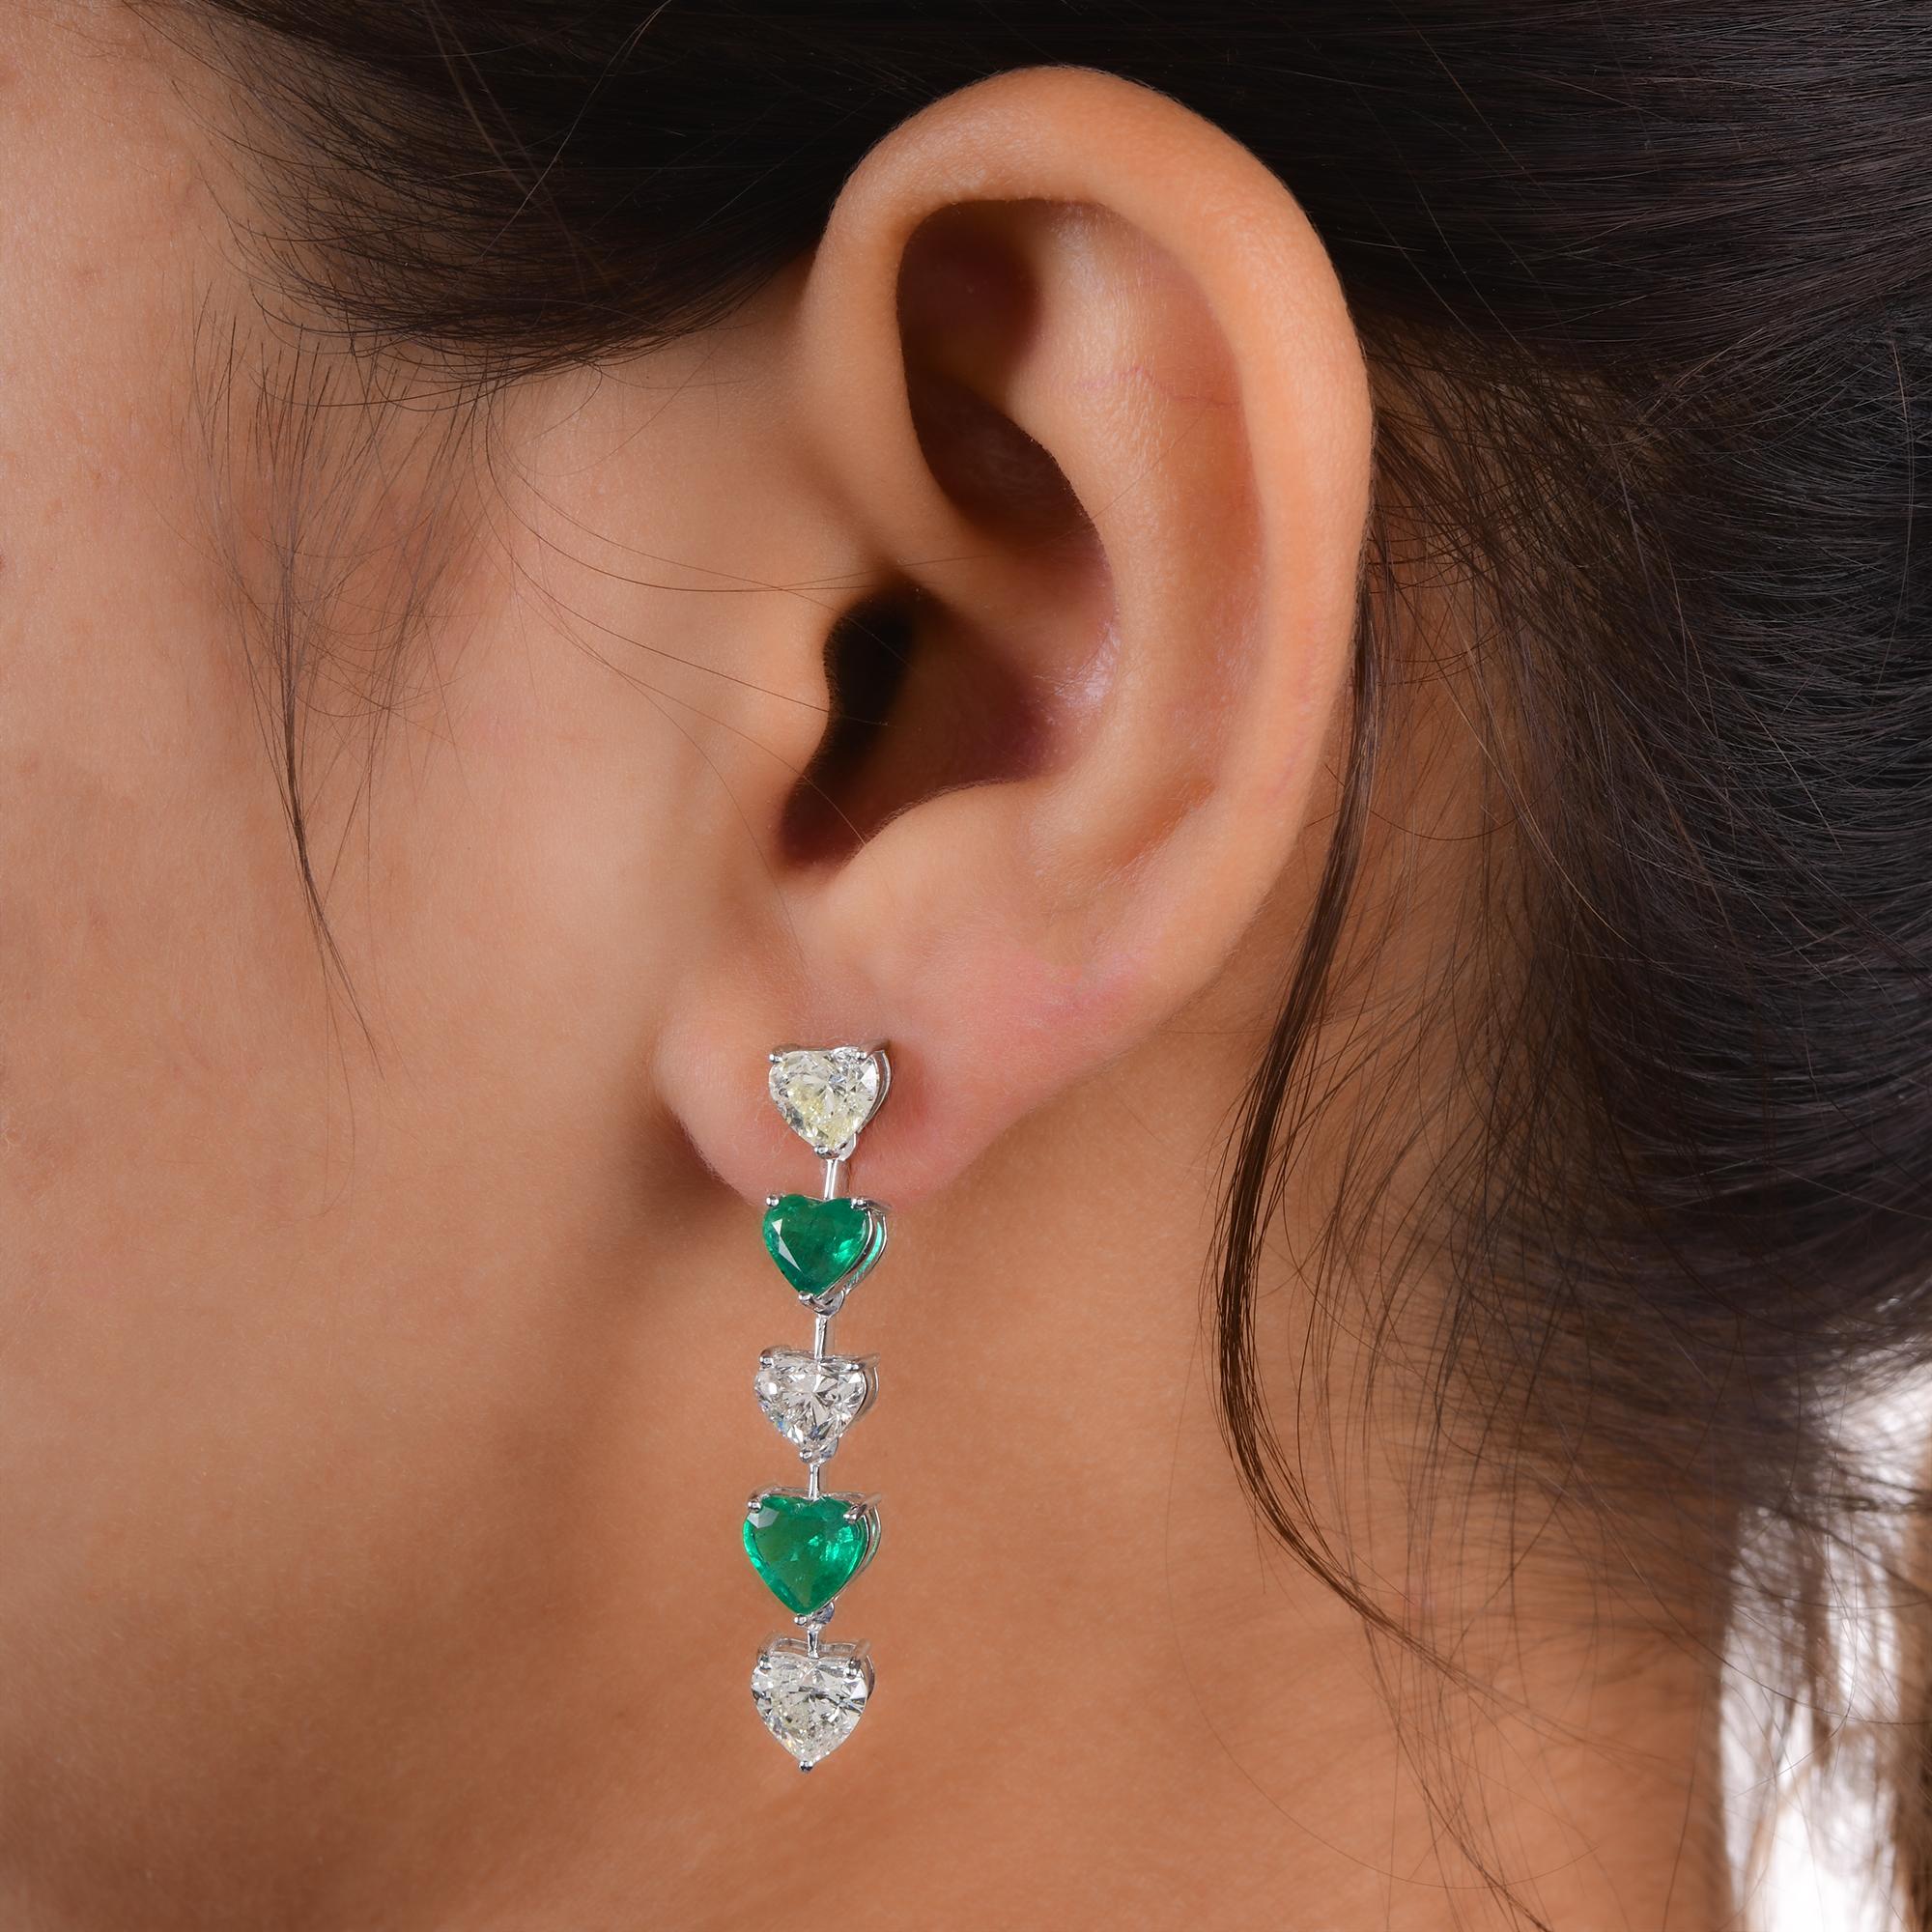 Modern Heart Zambian Emerald Gemstone Diamond Dangle Earrings 14 Kt White Gold Jewelry For Sale